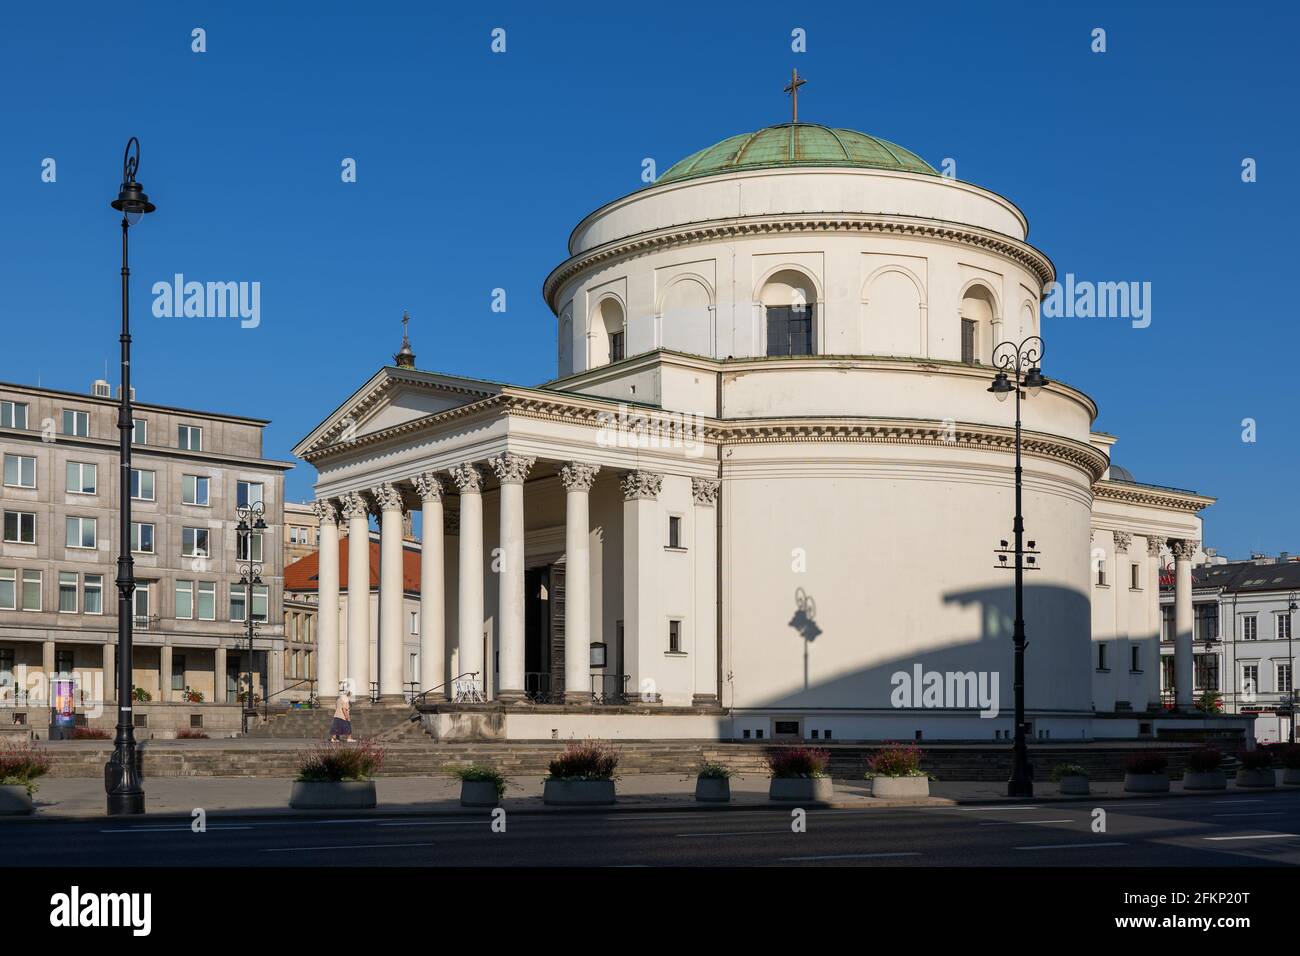 Église Saint-Alexandre sur la place des trois croix dans la ville de Varsovie en Pologne, architecture de style néoclassique. Banque D'Images